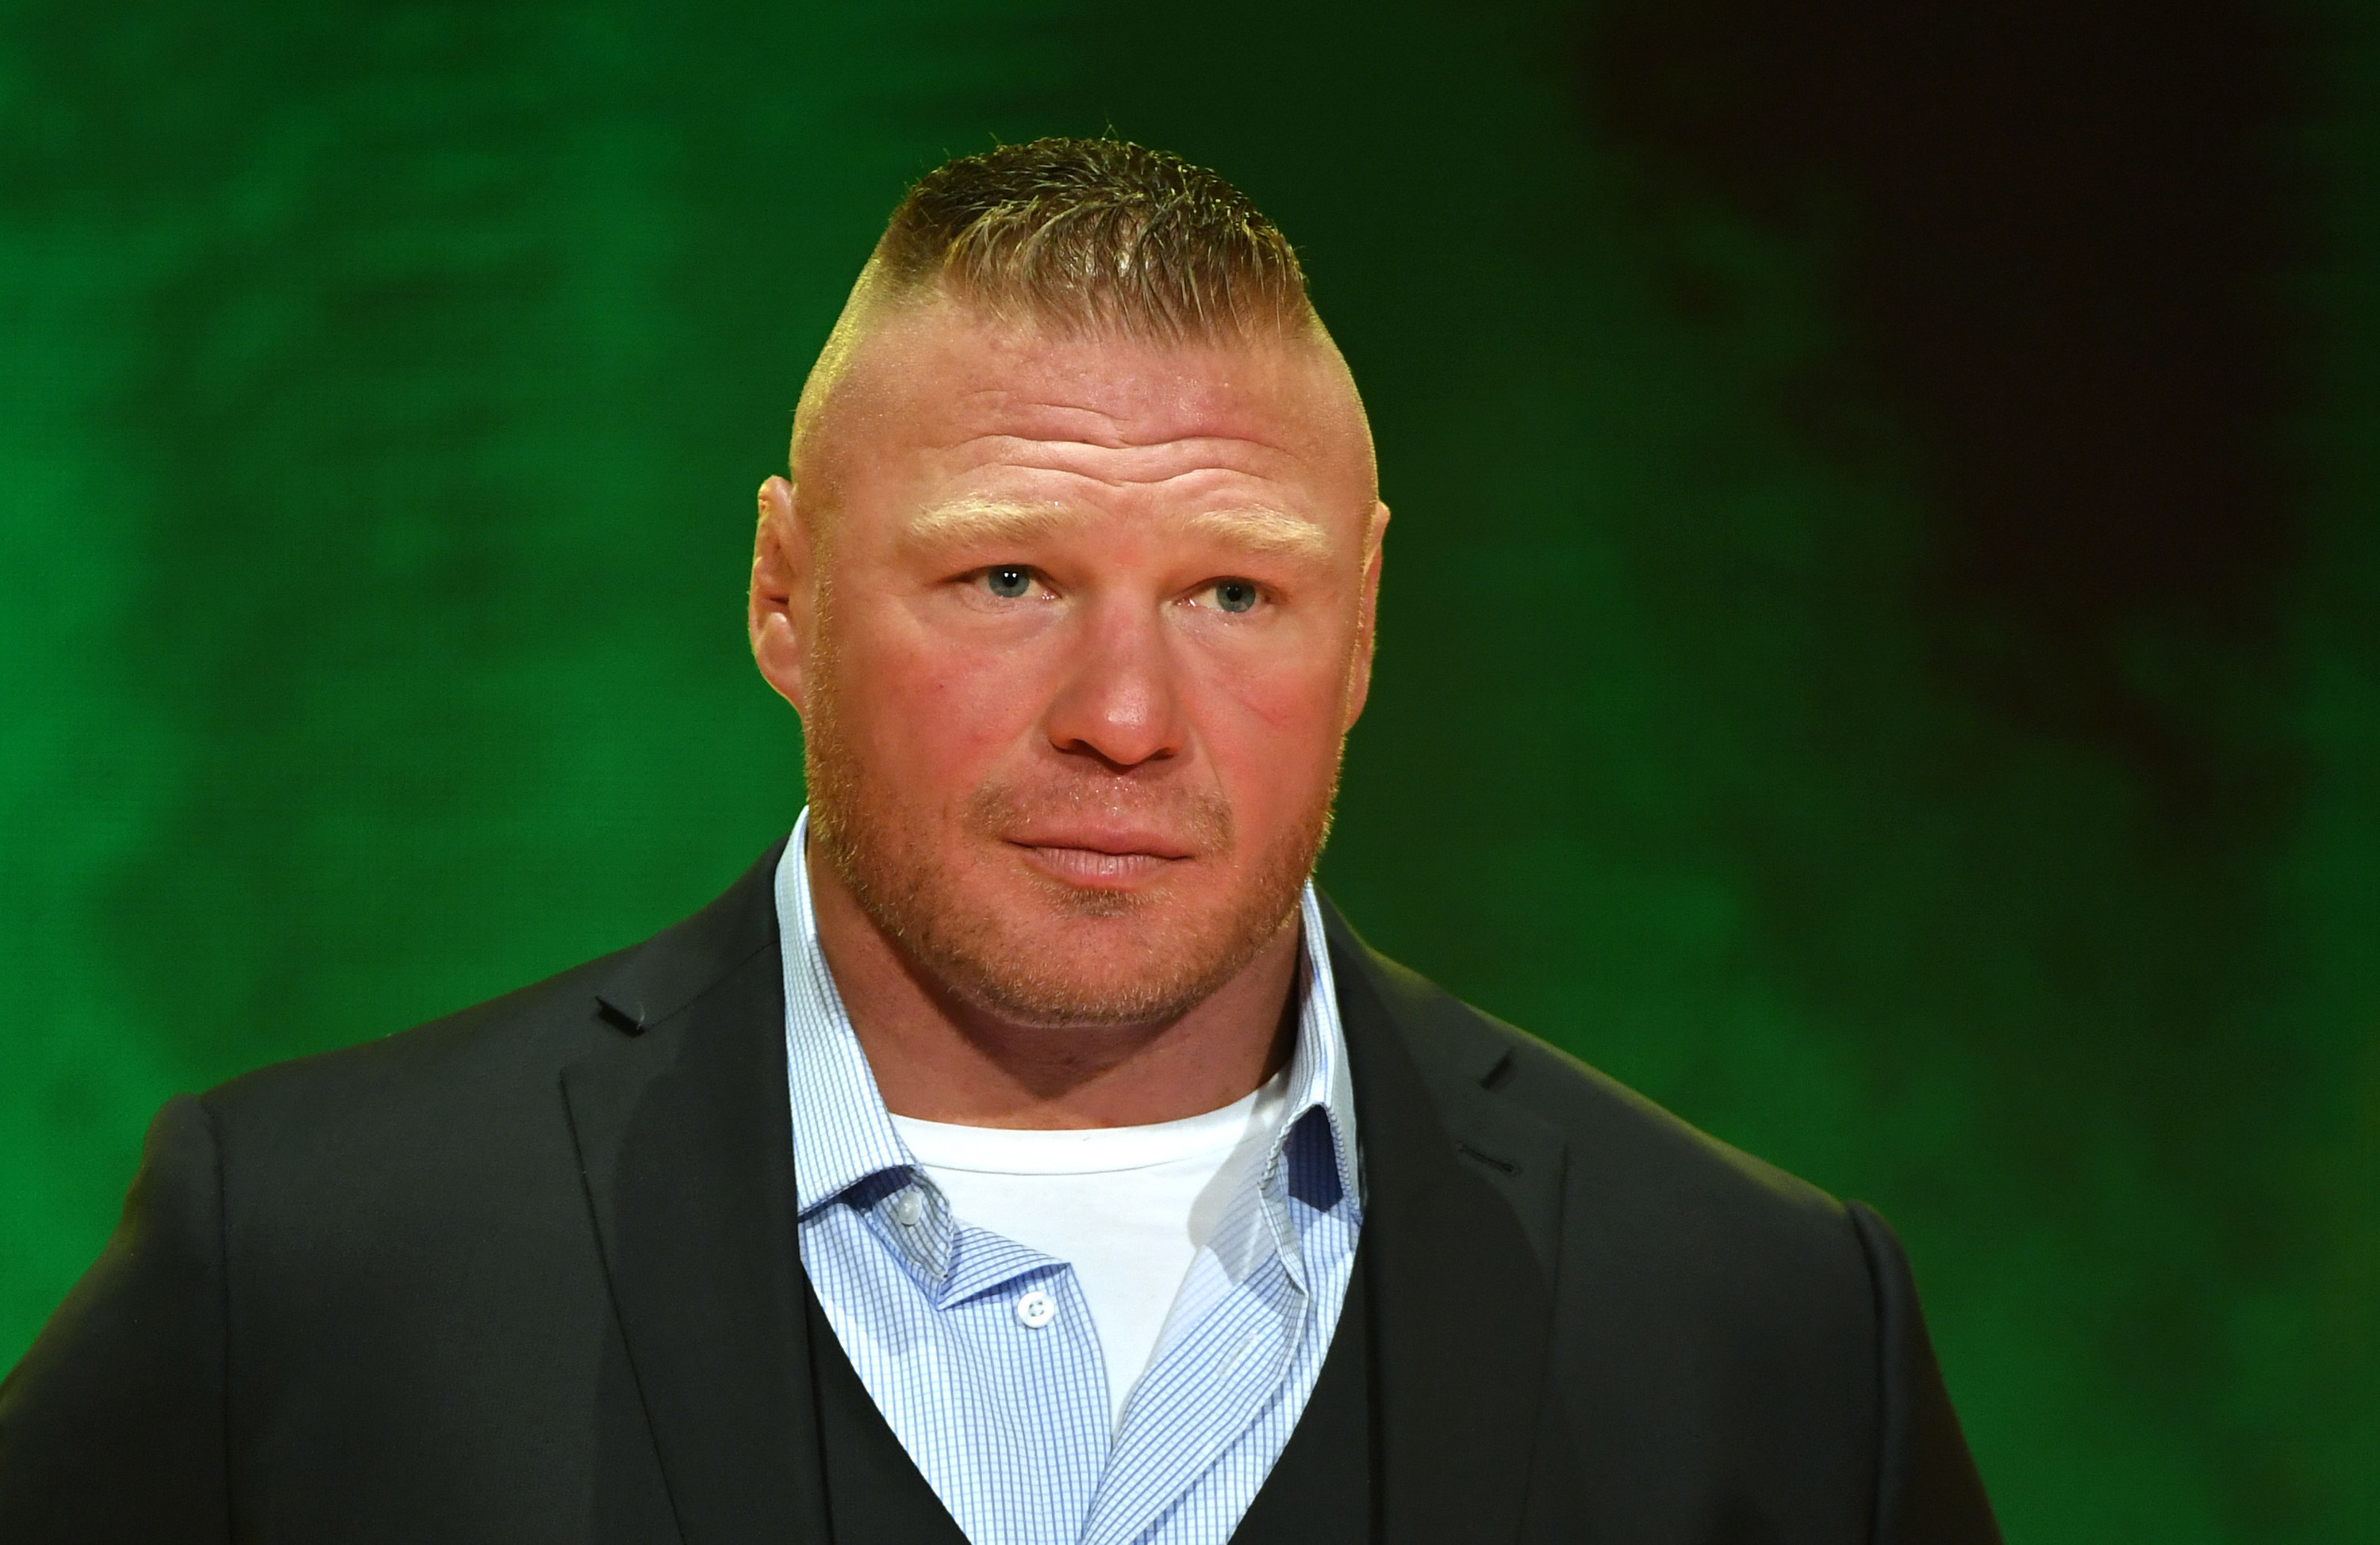 Brock Lesnar speaks at WWE event